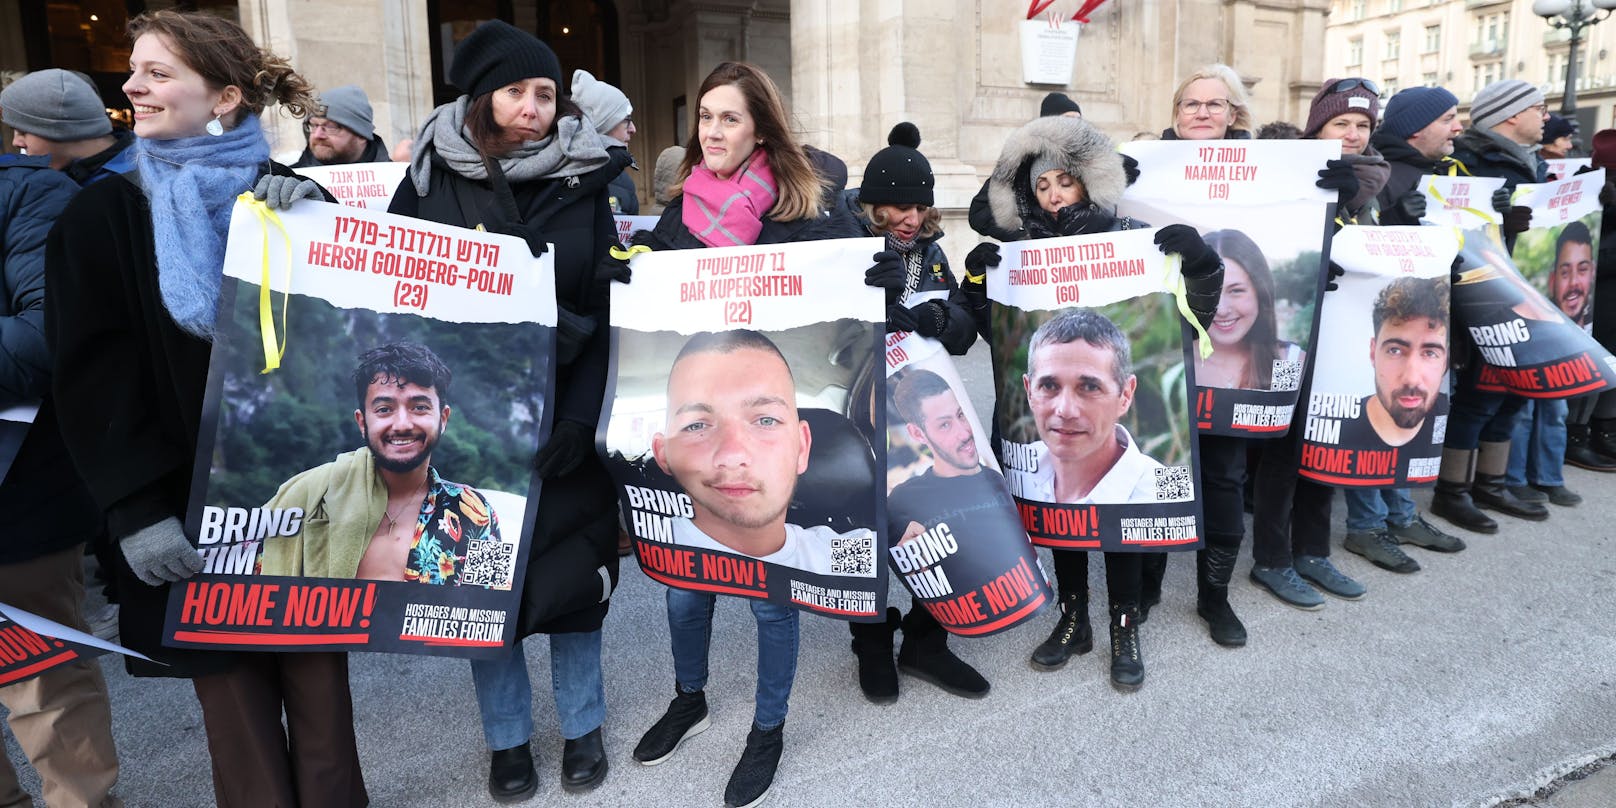 Rund 150 Menschen demonstrierten am Sonntag vor der Wiener Staatsoper für die Freilassung der Hamas-Geiseln. Unter den Teilnehmern: die Wienerin Marianna (rosa Schal). Ihr Neffe Bar Kupershtein (22) ist eine der Hamas-Geiseln.